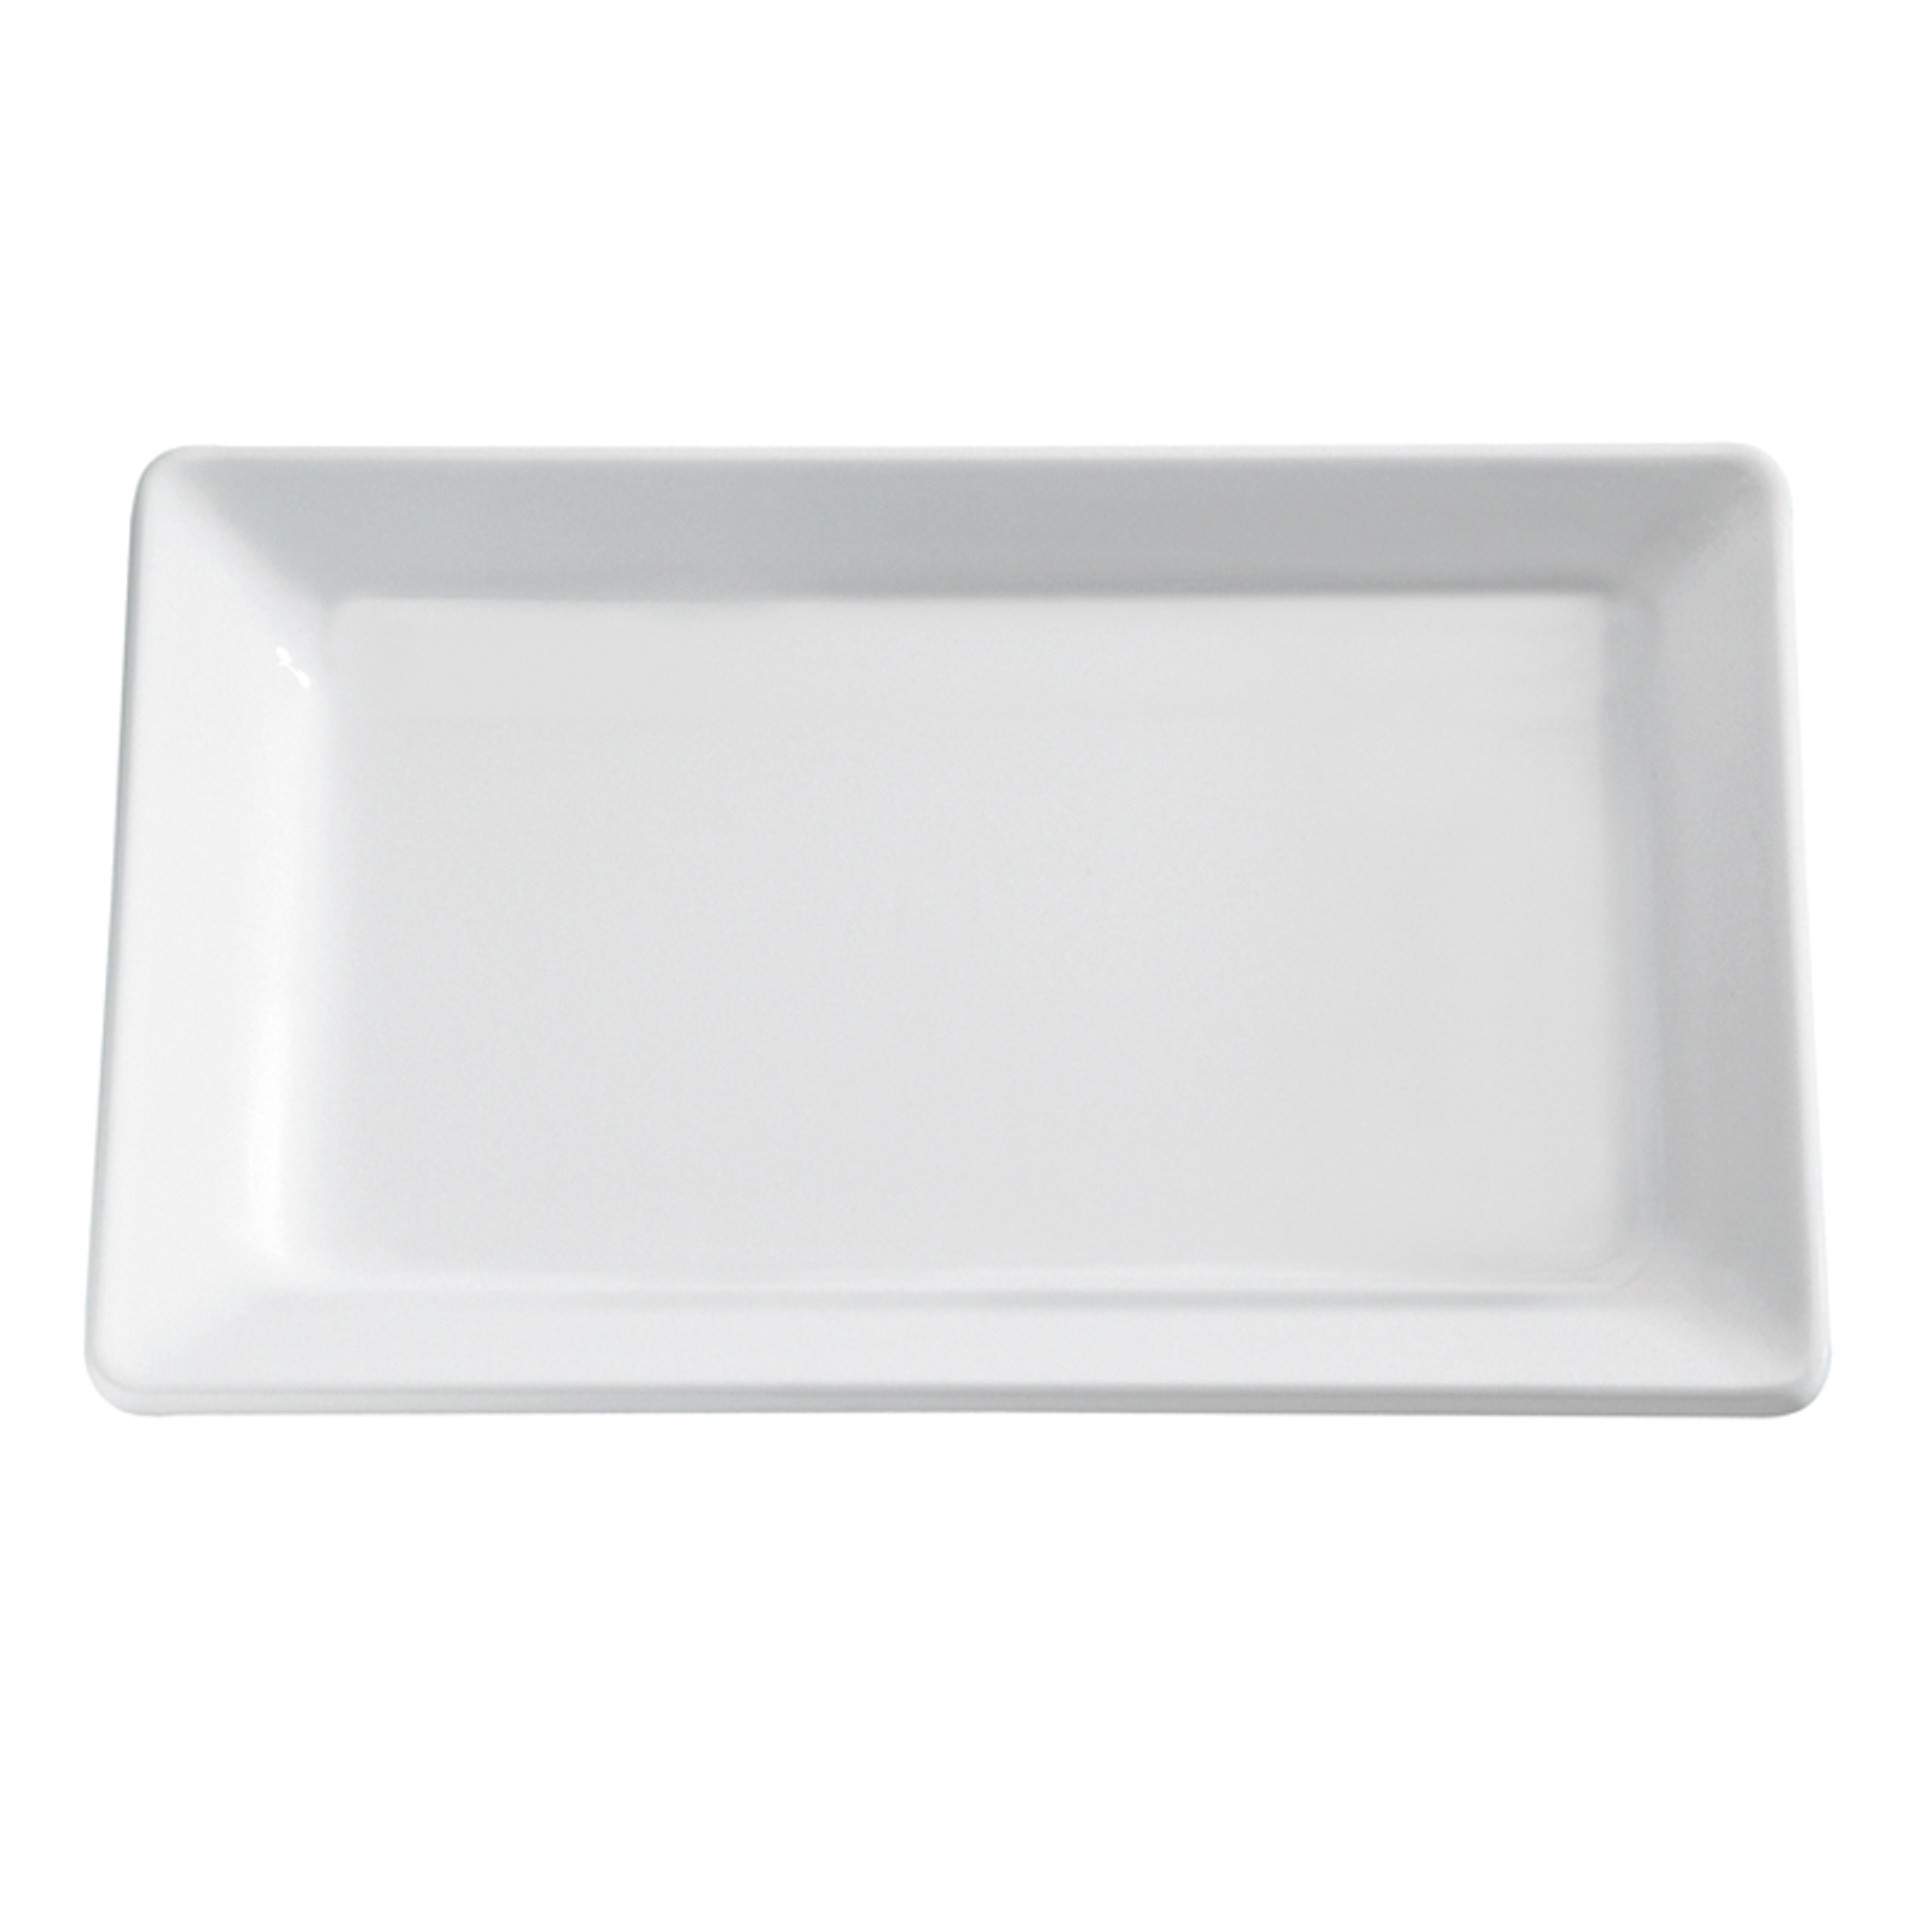 GN-Tablett - Serie Pure - weiß - Abm. 3 cm - GN 2/4 (530 x 162 mm) - Melamin - 83433-B